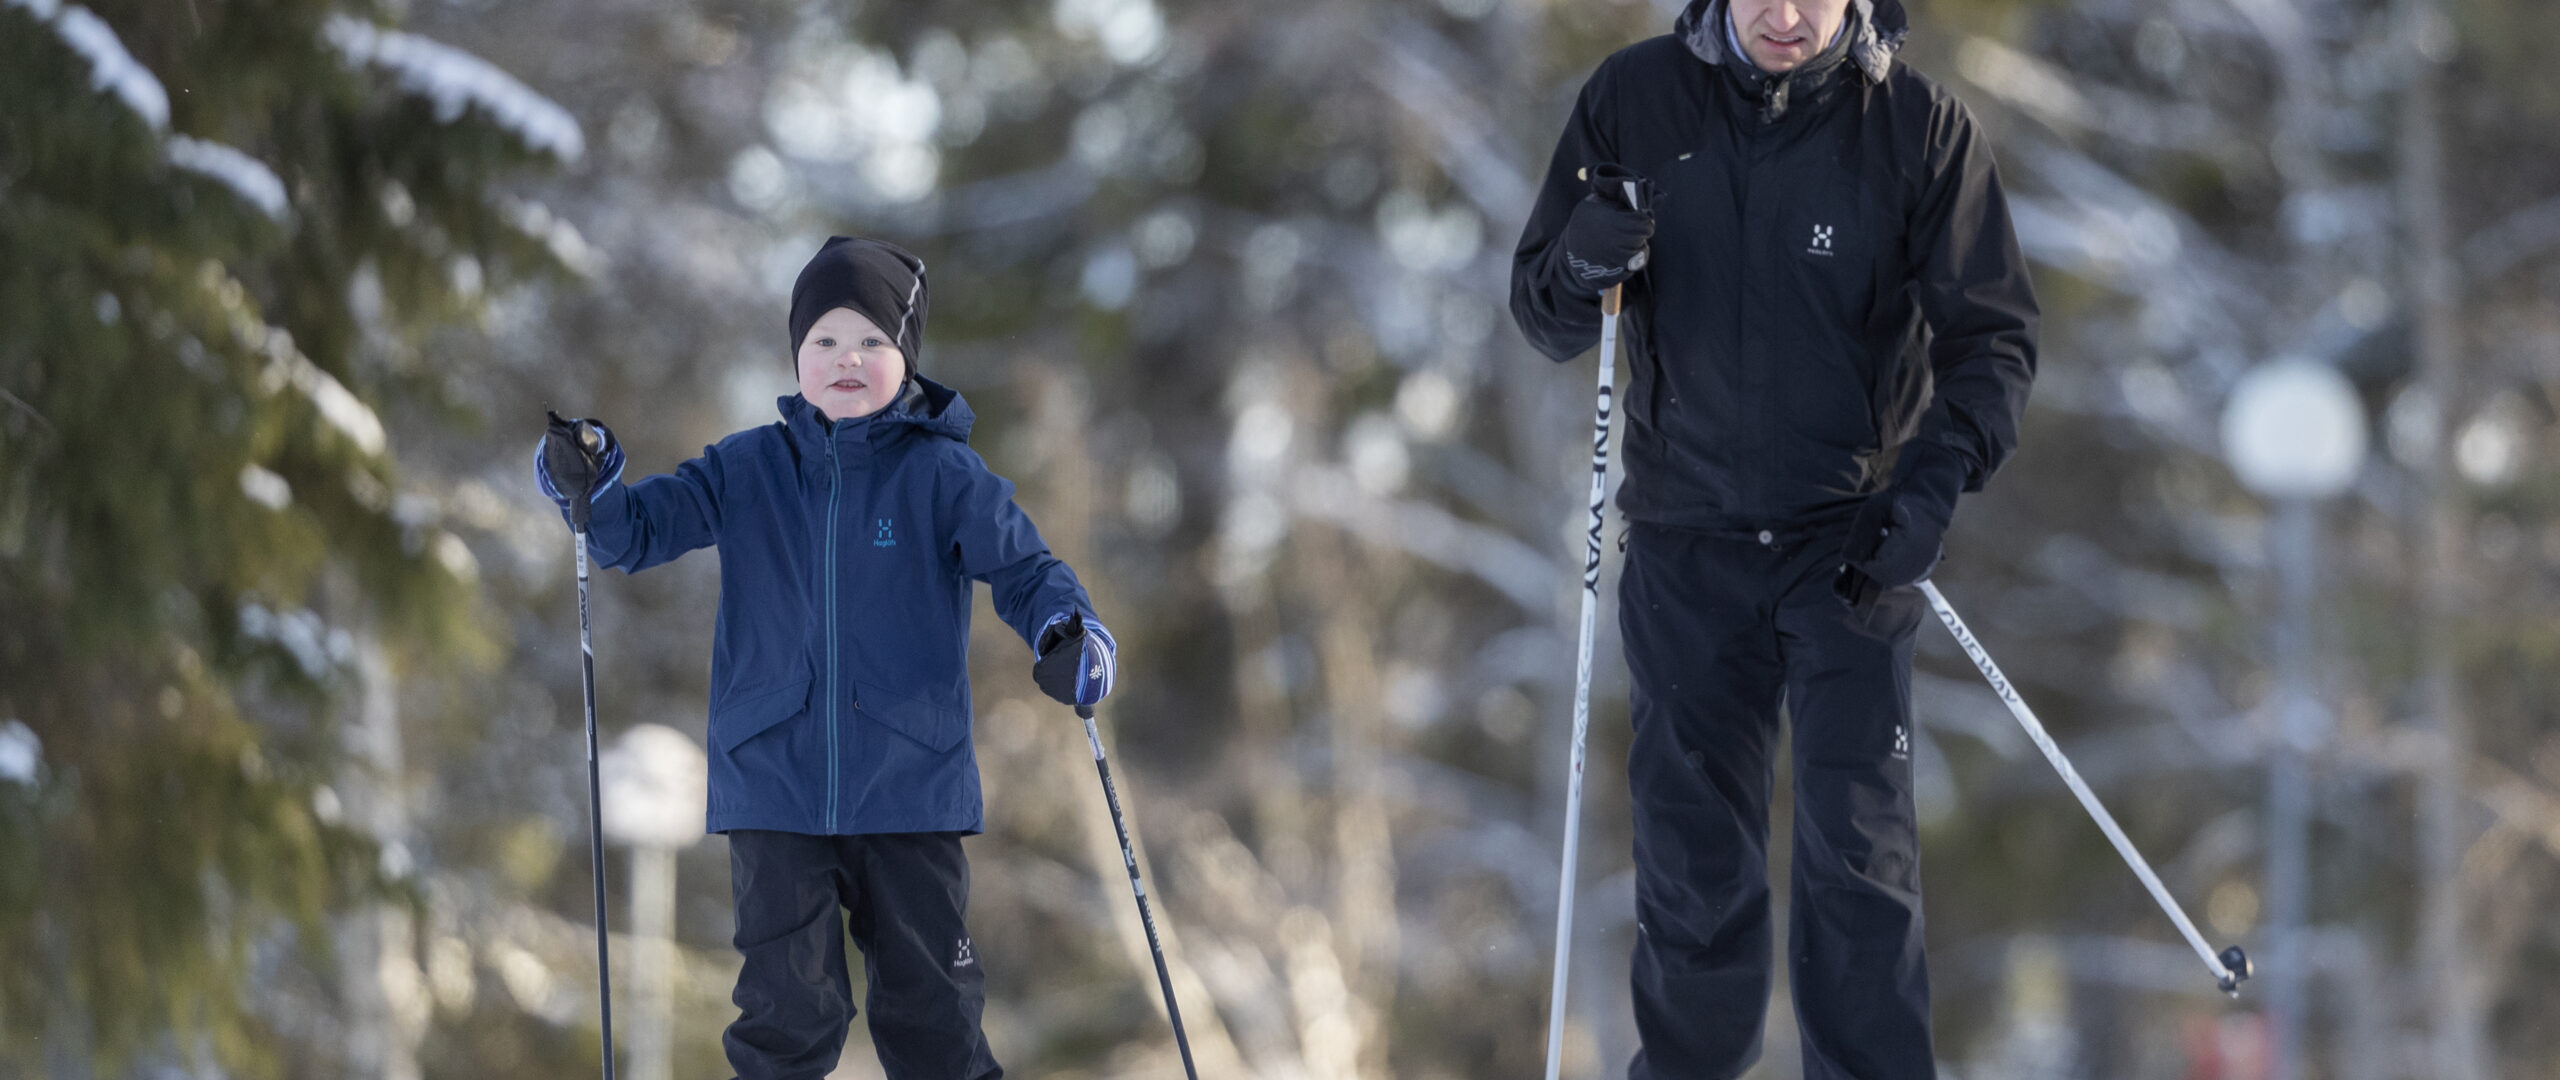 Mies ja poika hiihtää perinteisen tyylillä havumetsässä.